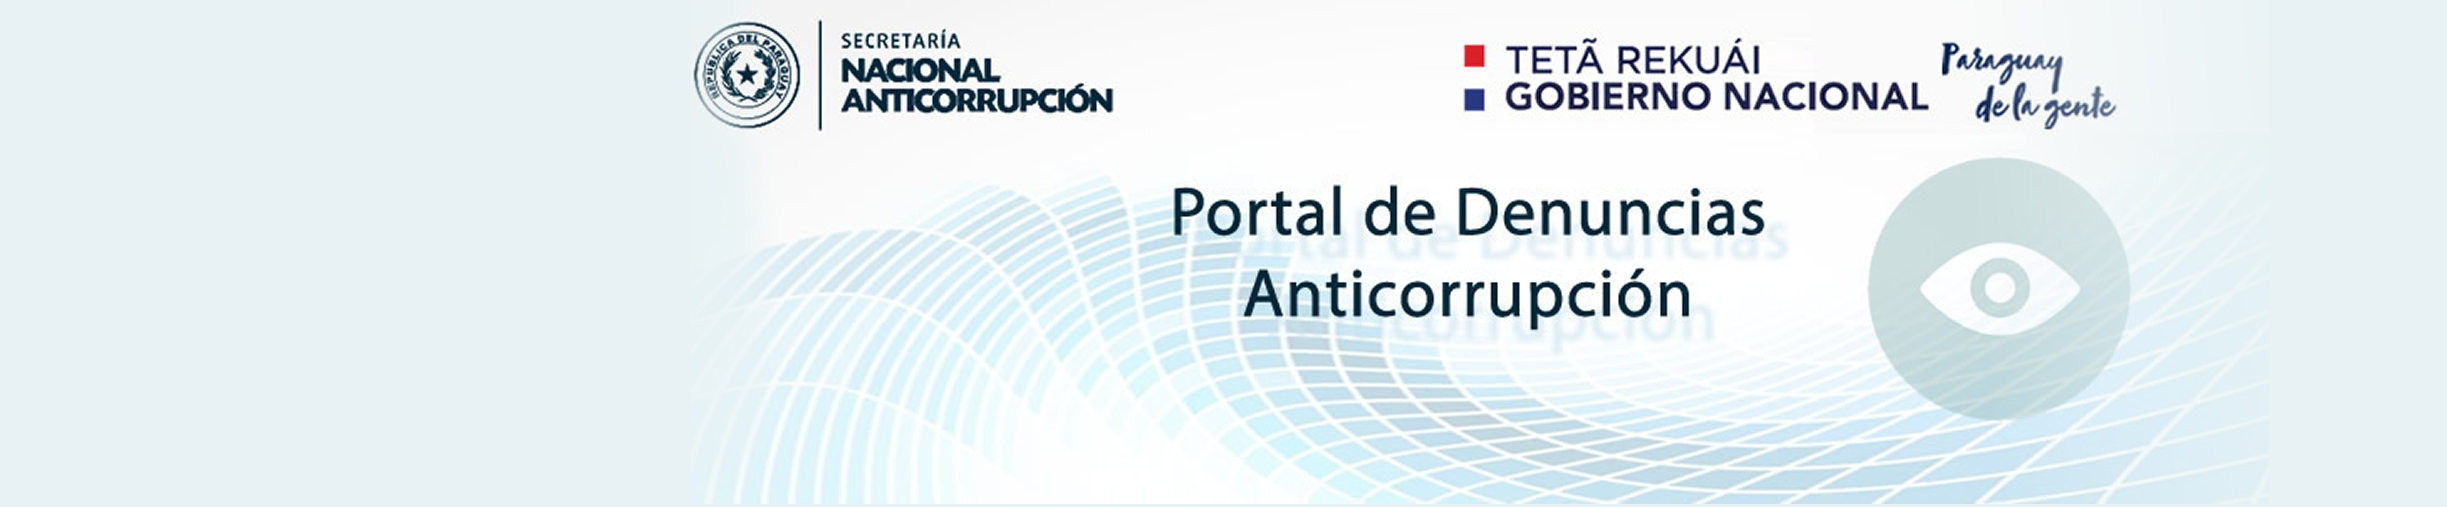 Portal de Denuncias Anticorrupción